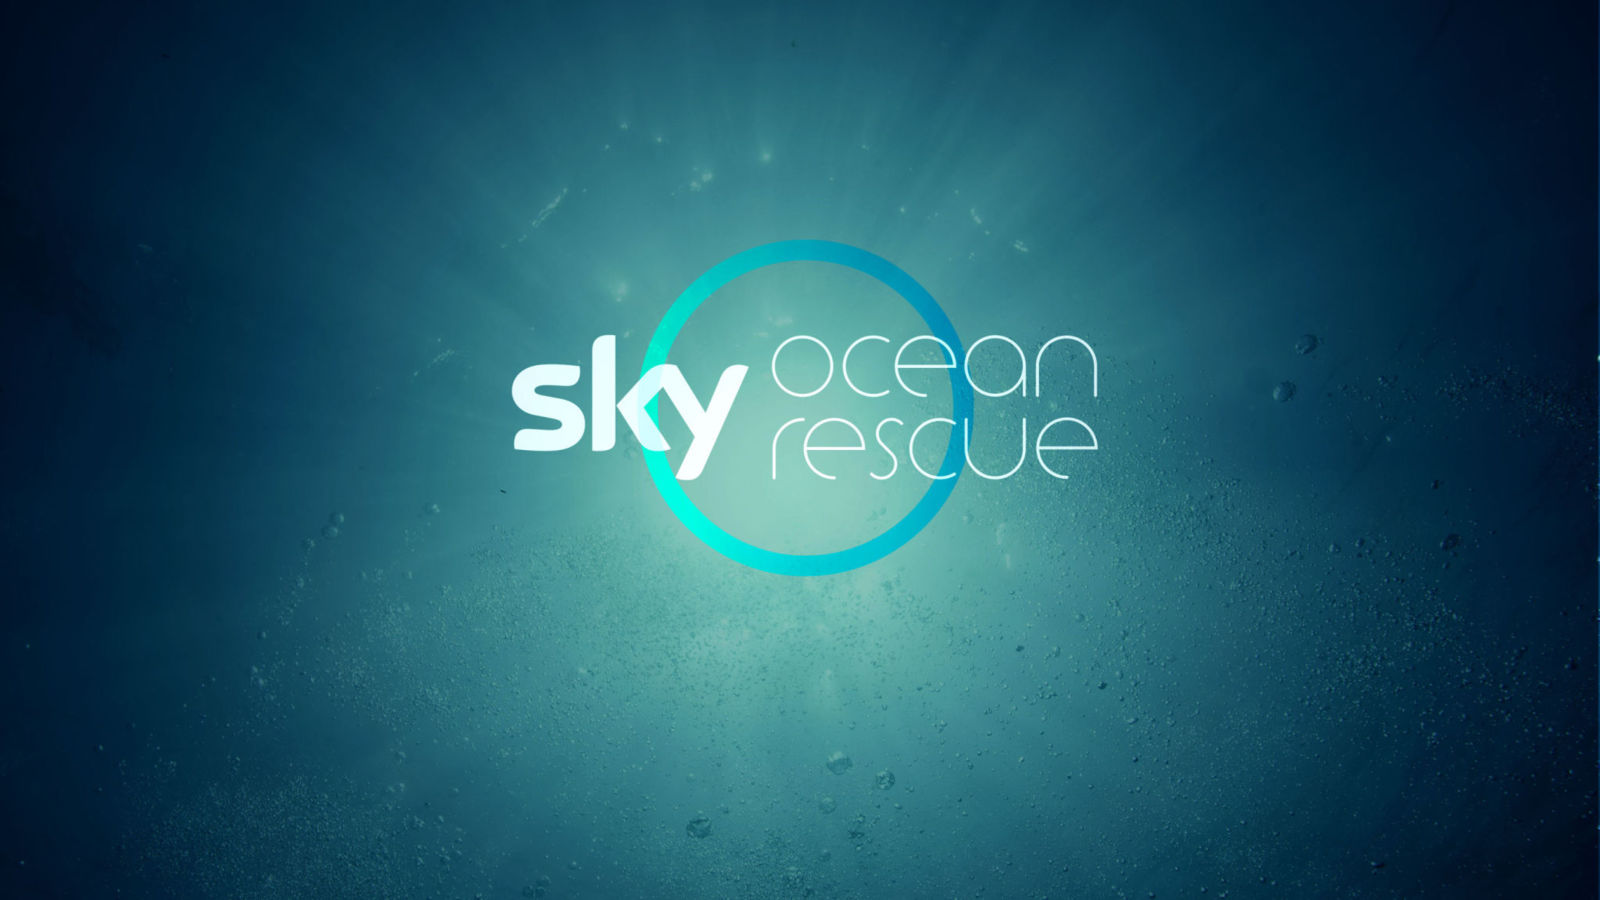 Sky Ocean Rescue